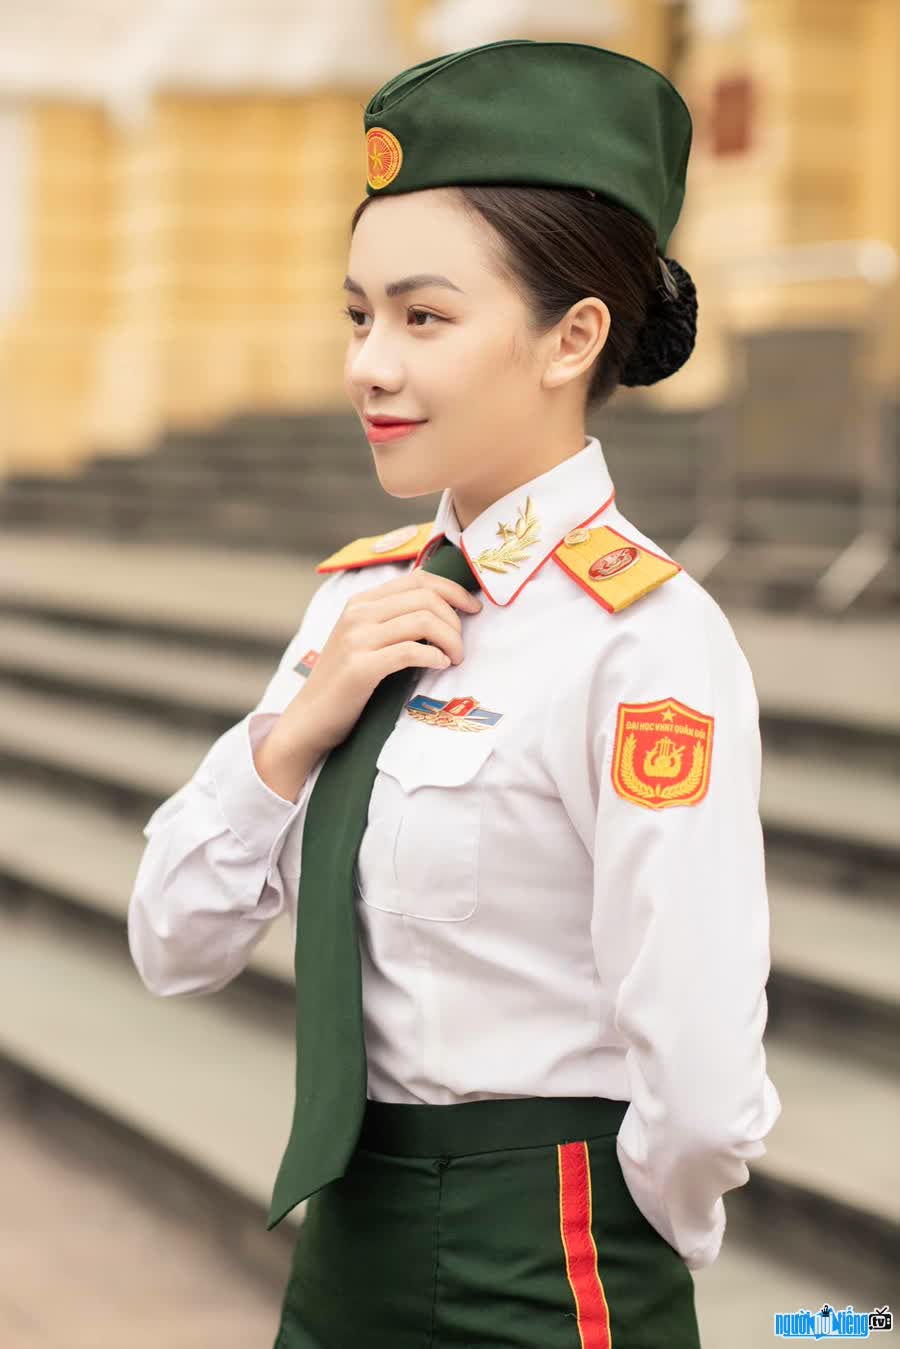 Ca sĩ Vũ Thùy Linh theo học tại trường Đại học Văn hóa Nghệ thuật Quân đội